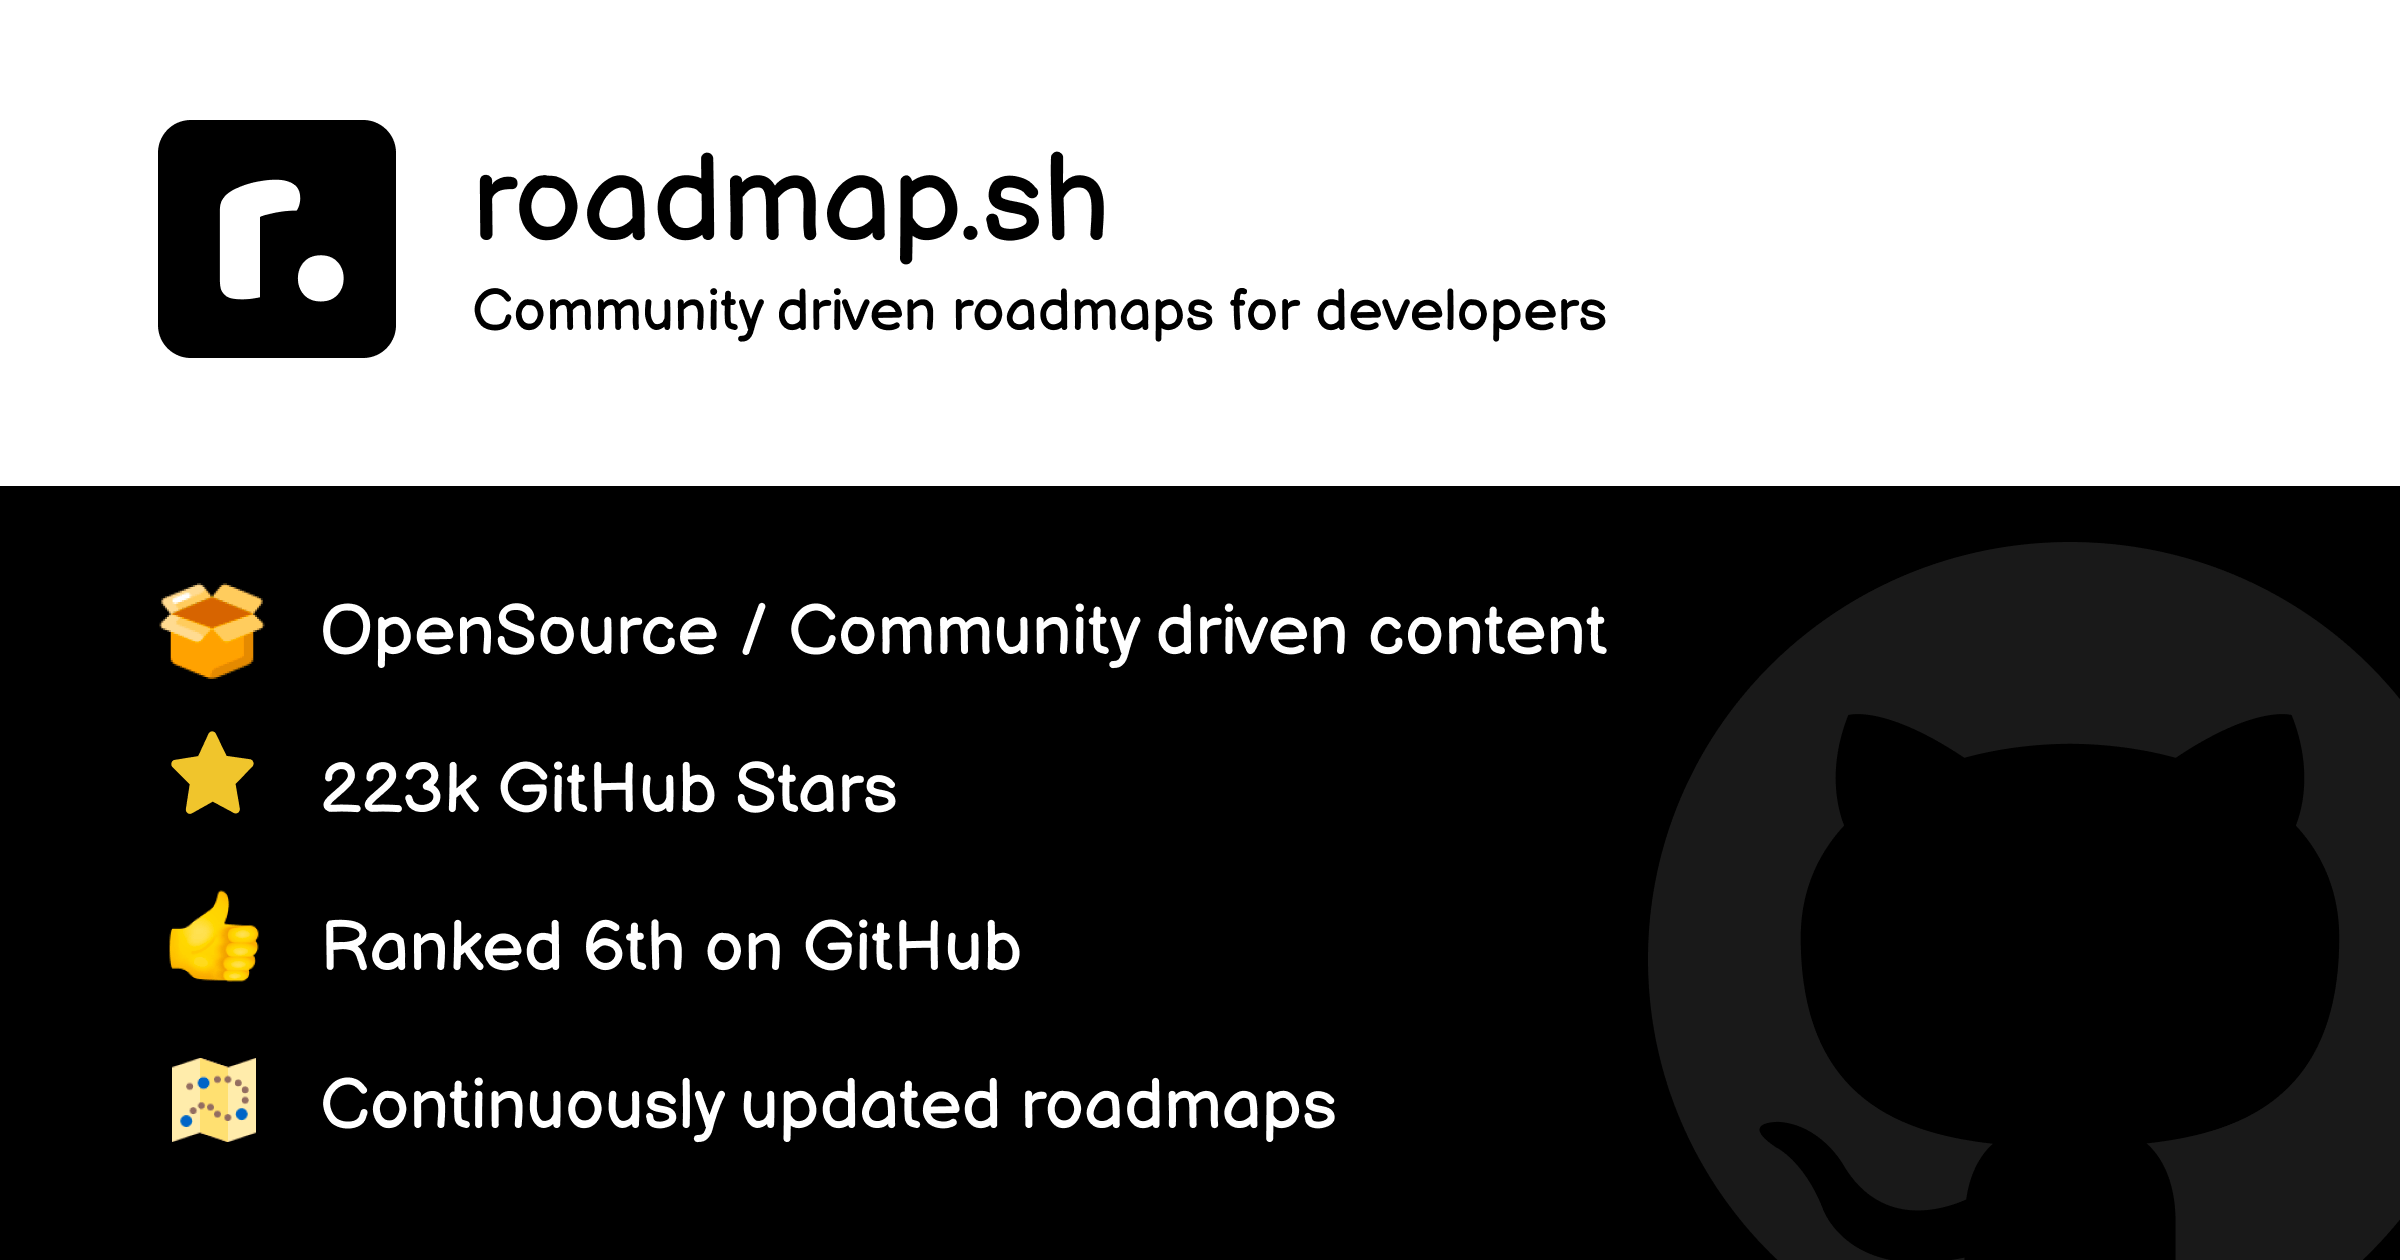 Developer Roadmaps - roadmap.sh